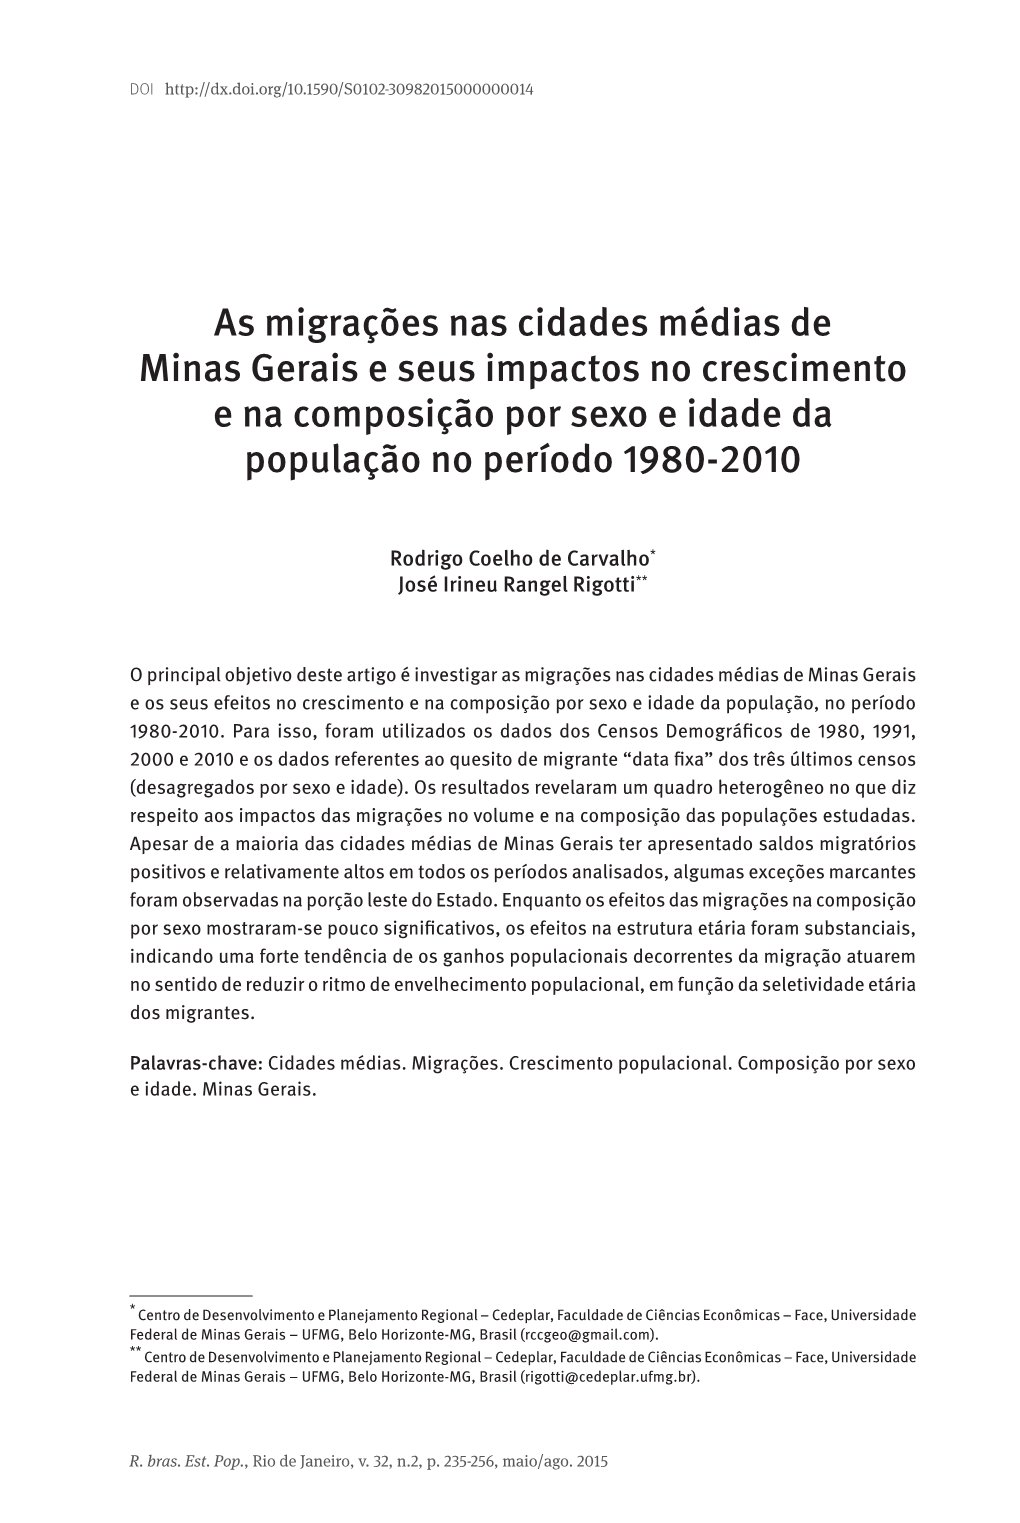 As Migrações Nas Cidades Médias De Minas Gerais E Seus Impactos No Crescimento E Na Composição Por Sexo E Idade Da População No Período 1980-2010